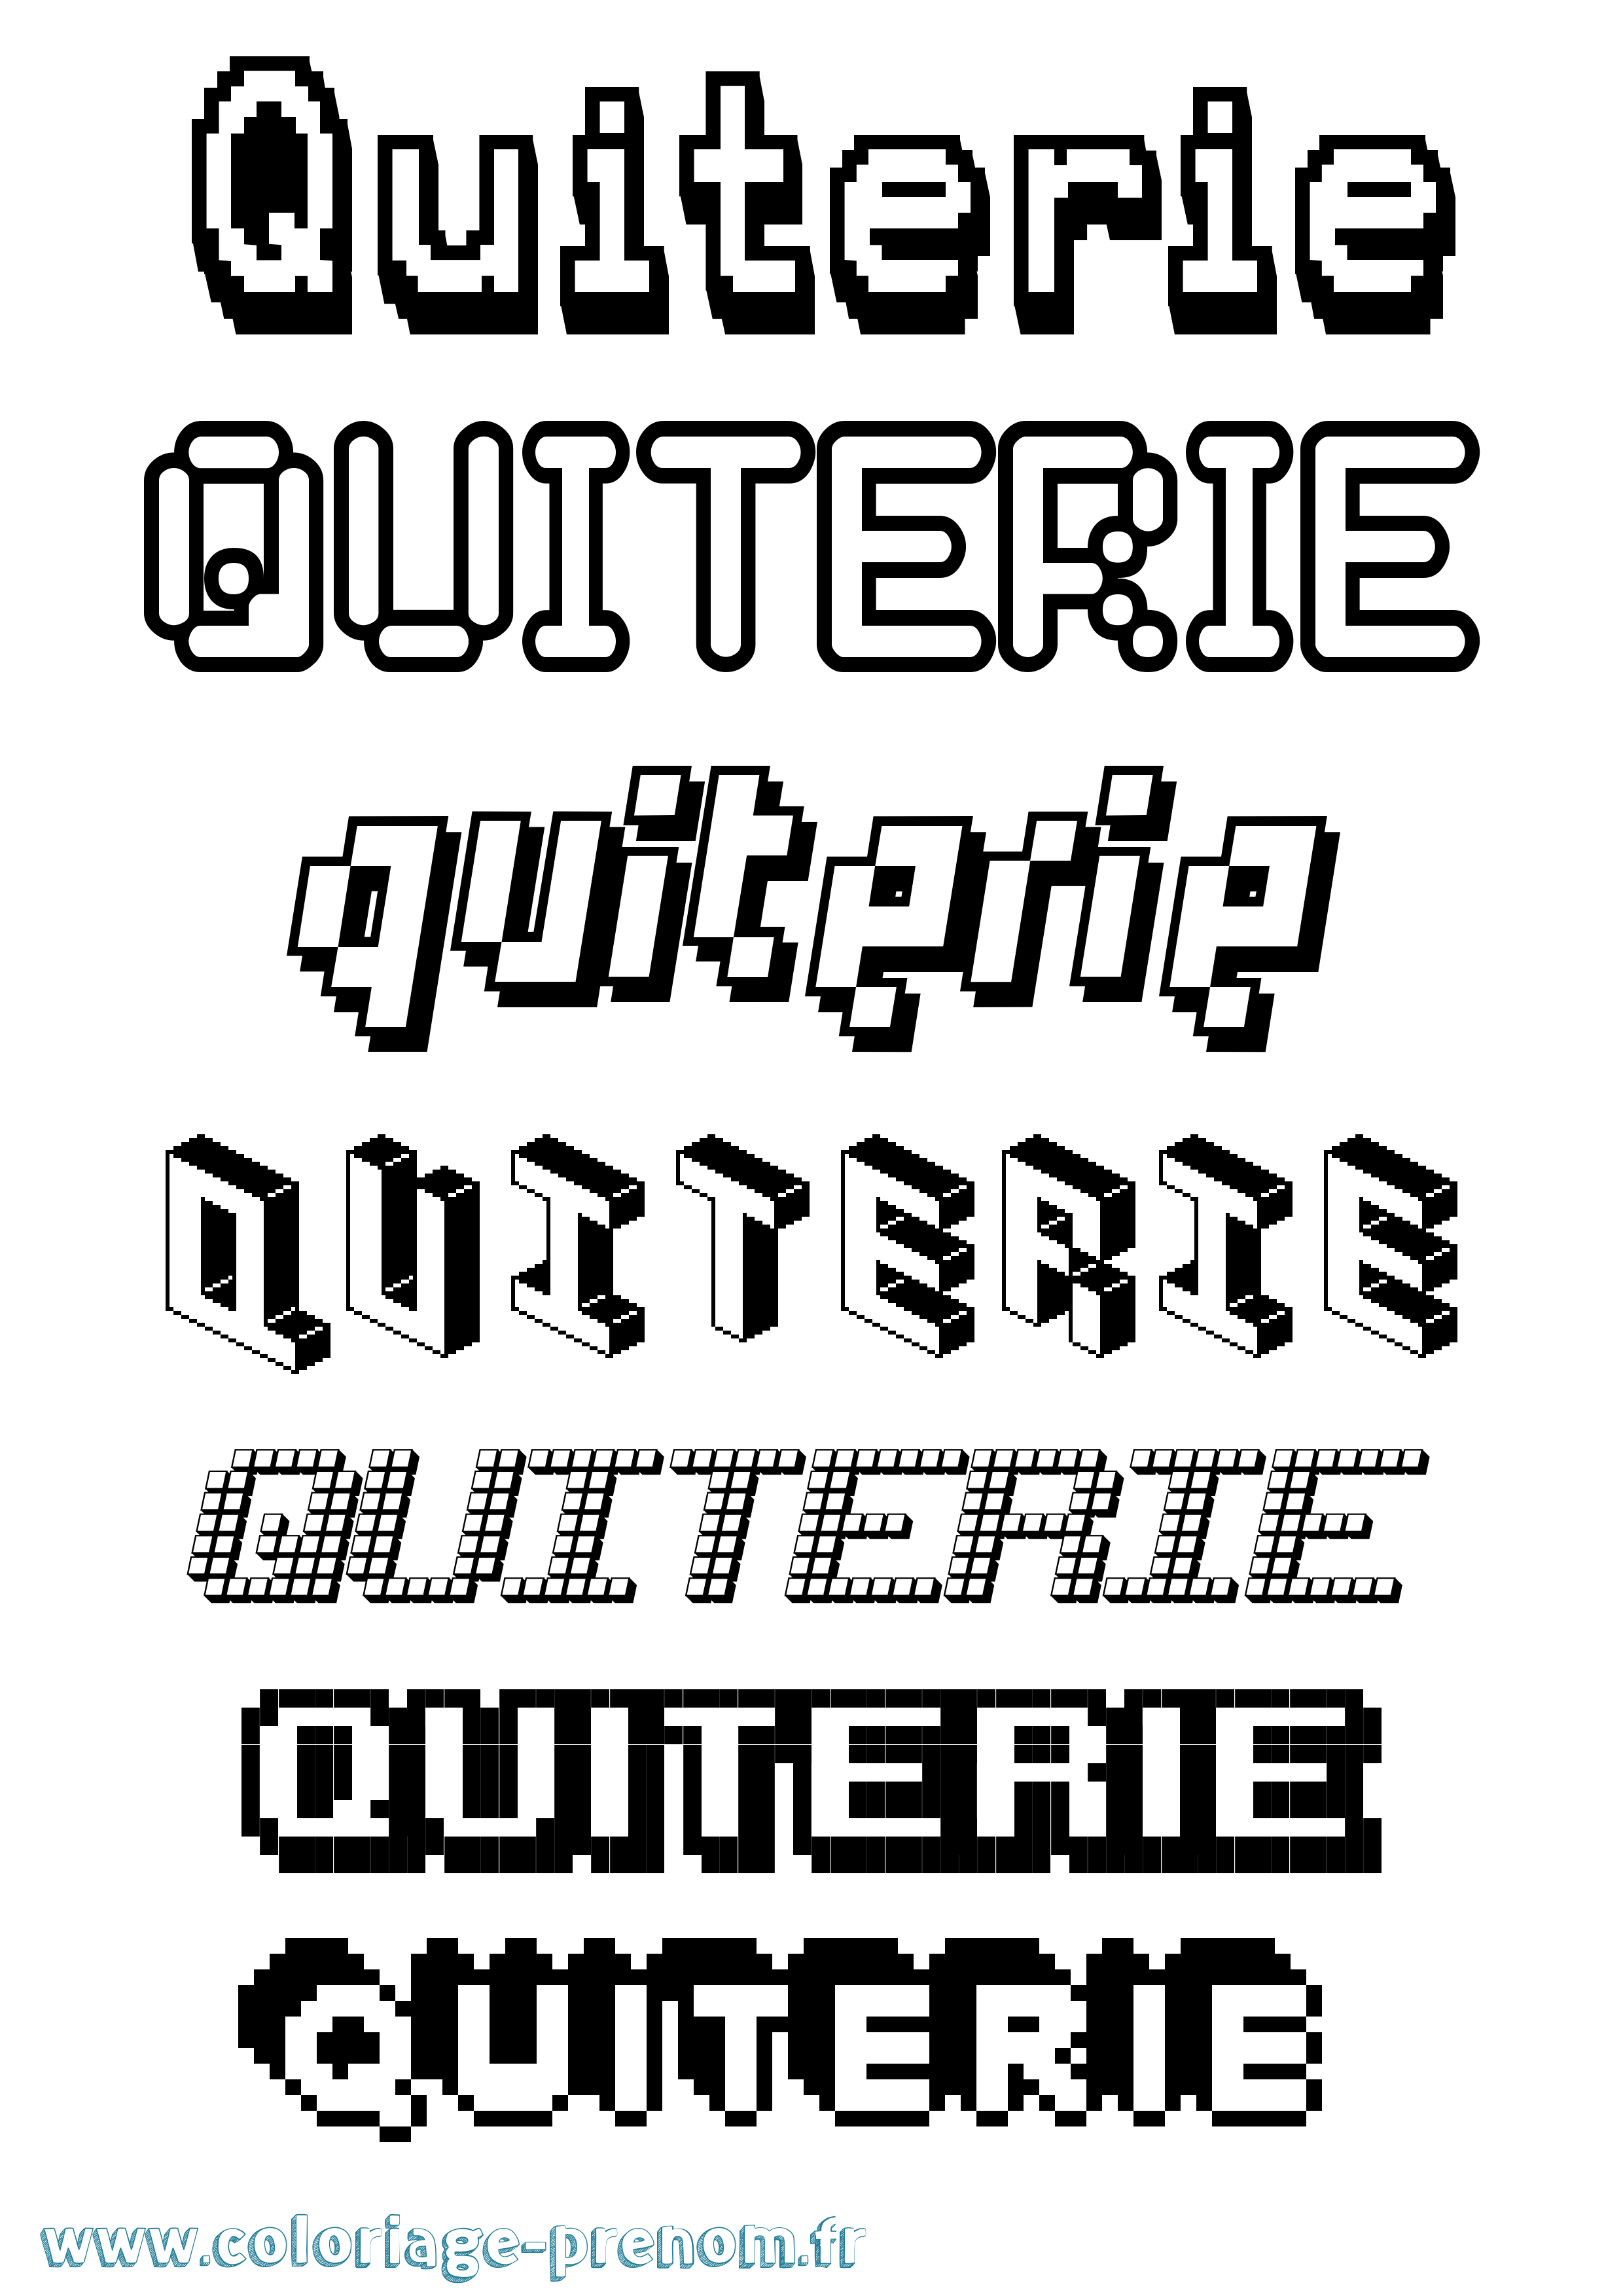 Coloriage prénom Quiterie Pixel